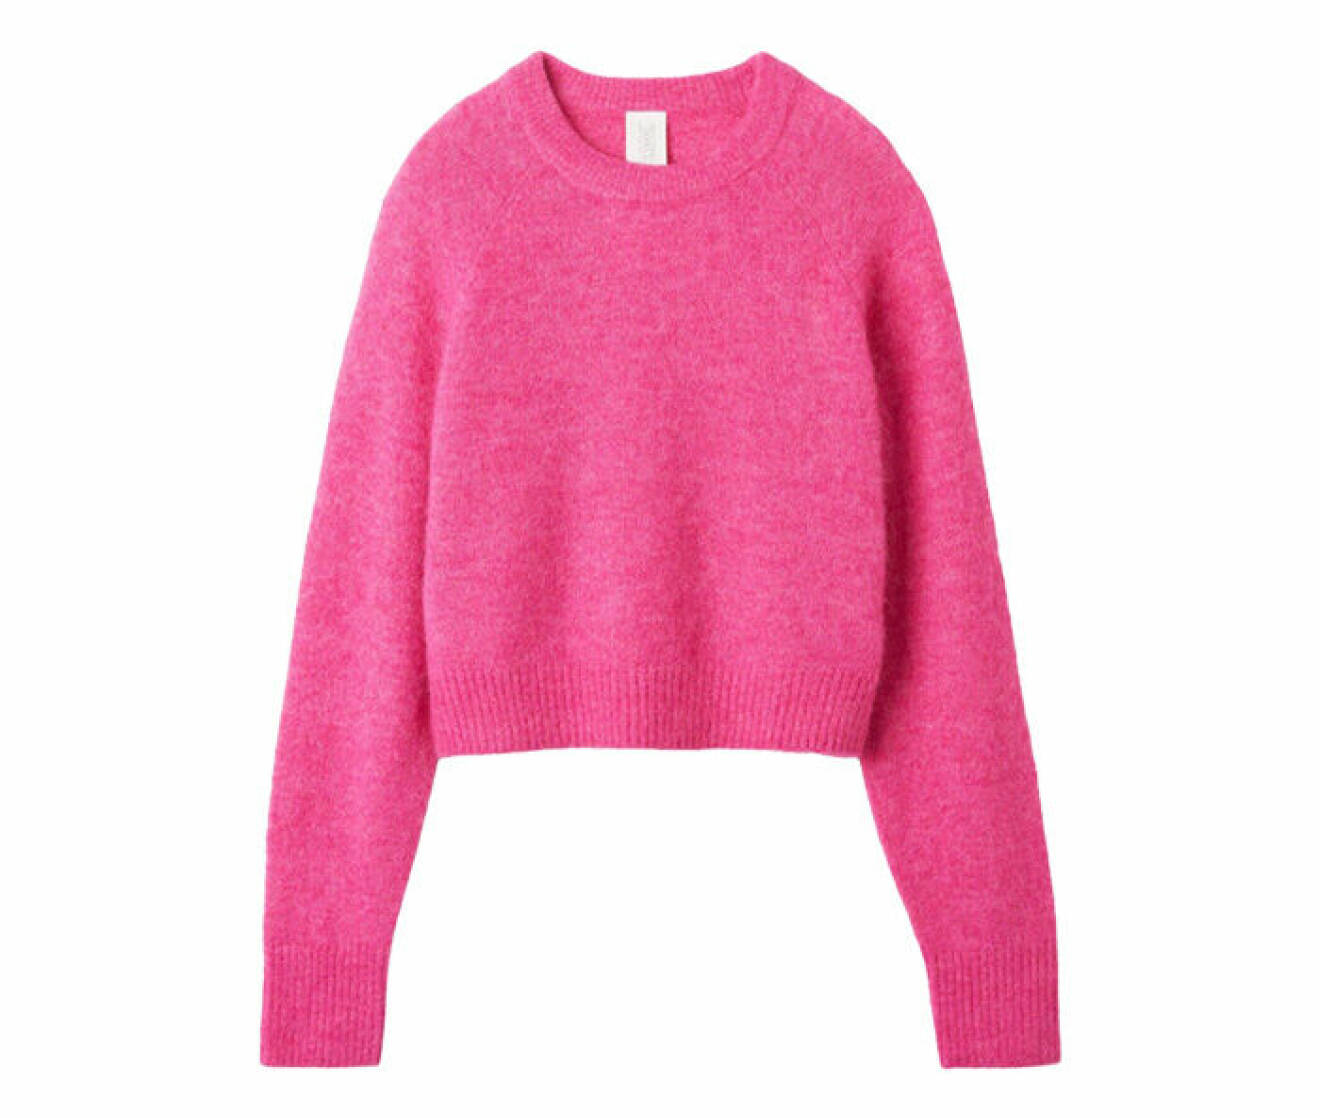 rosa stickad tröja gjord i ull och alpackamix från CW by Carin Wester